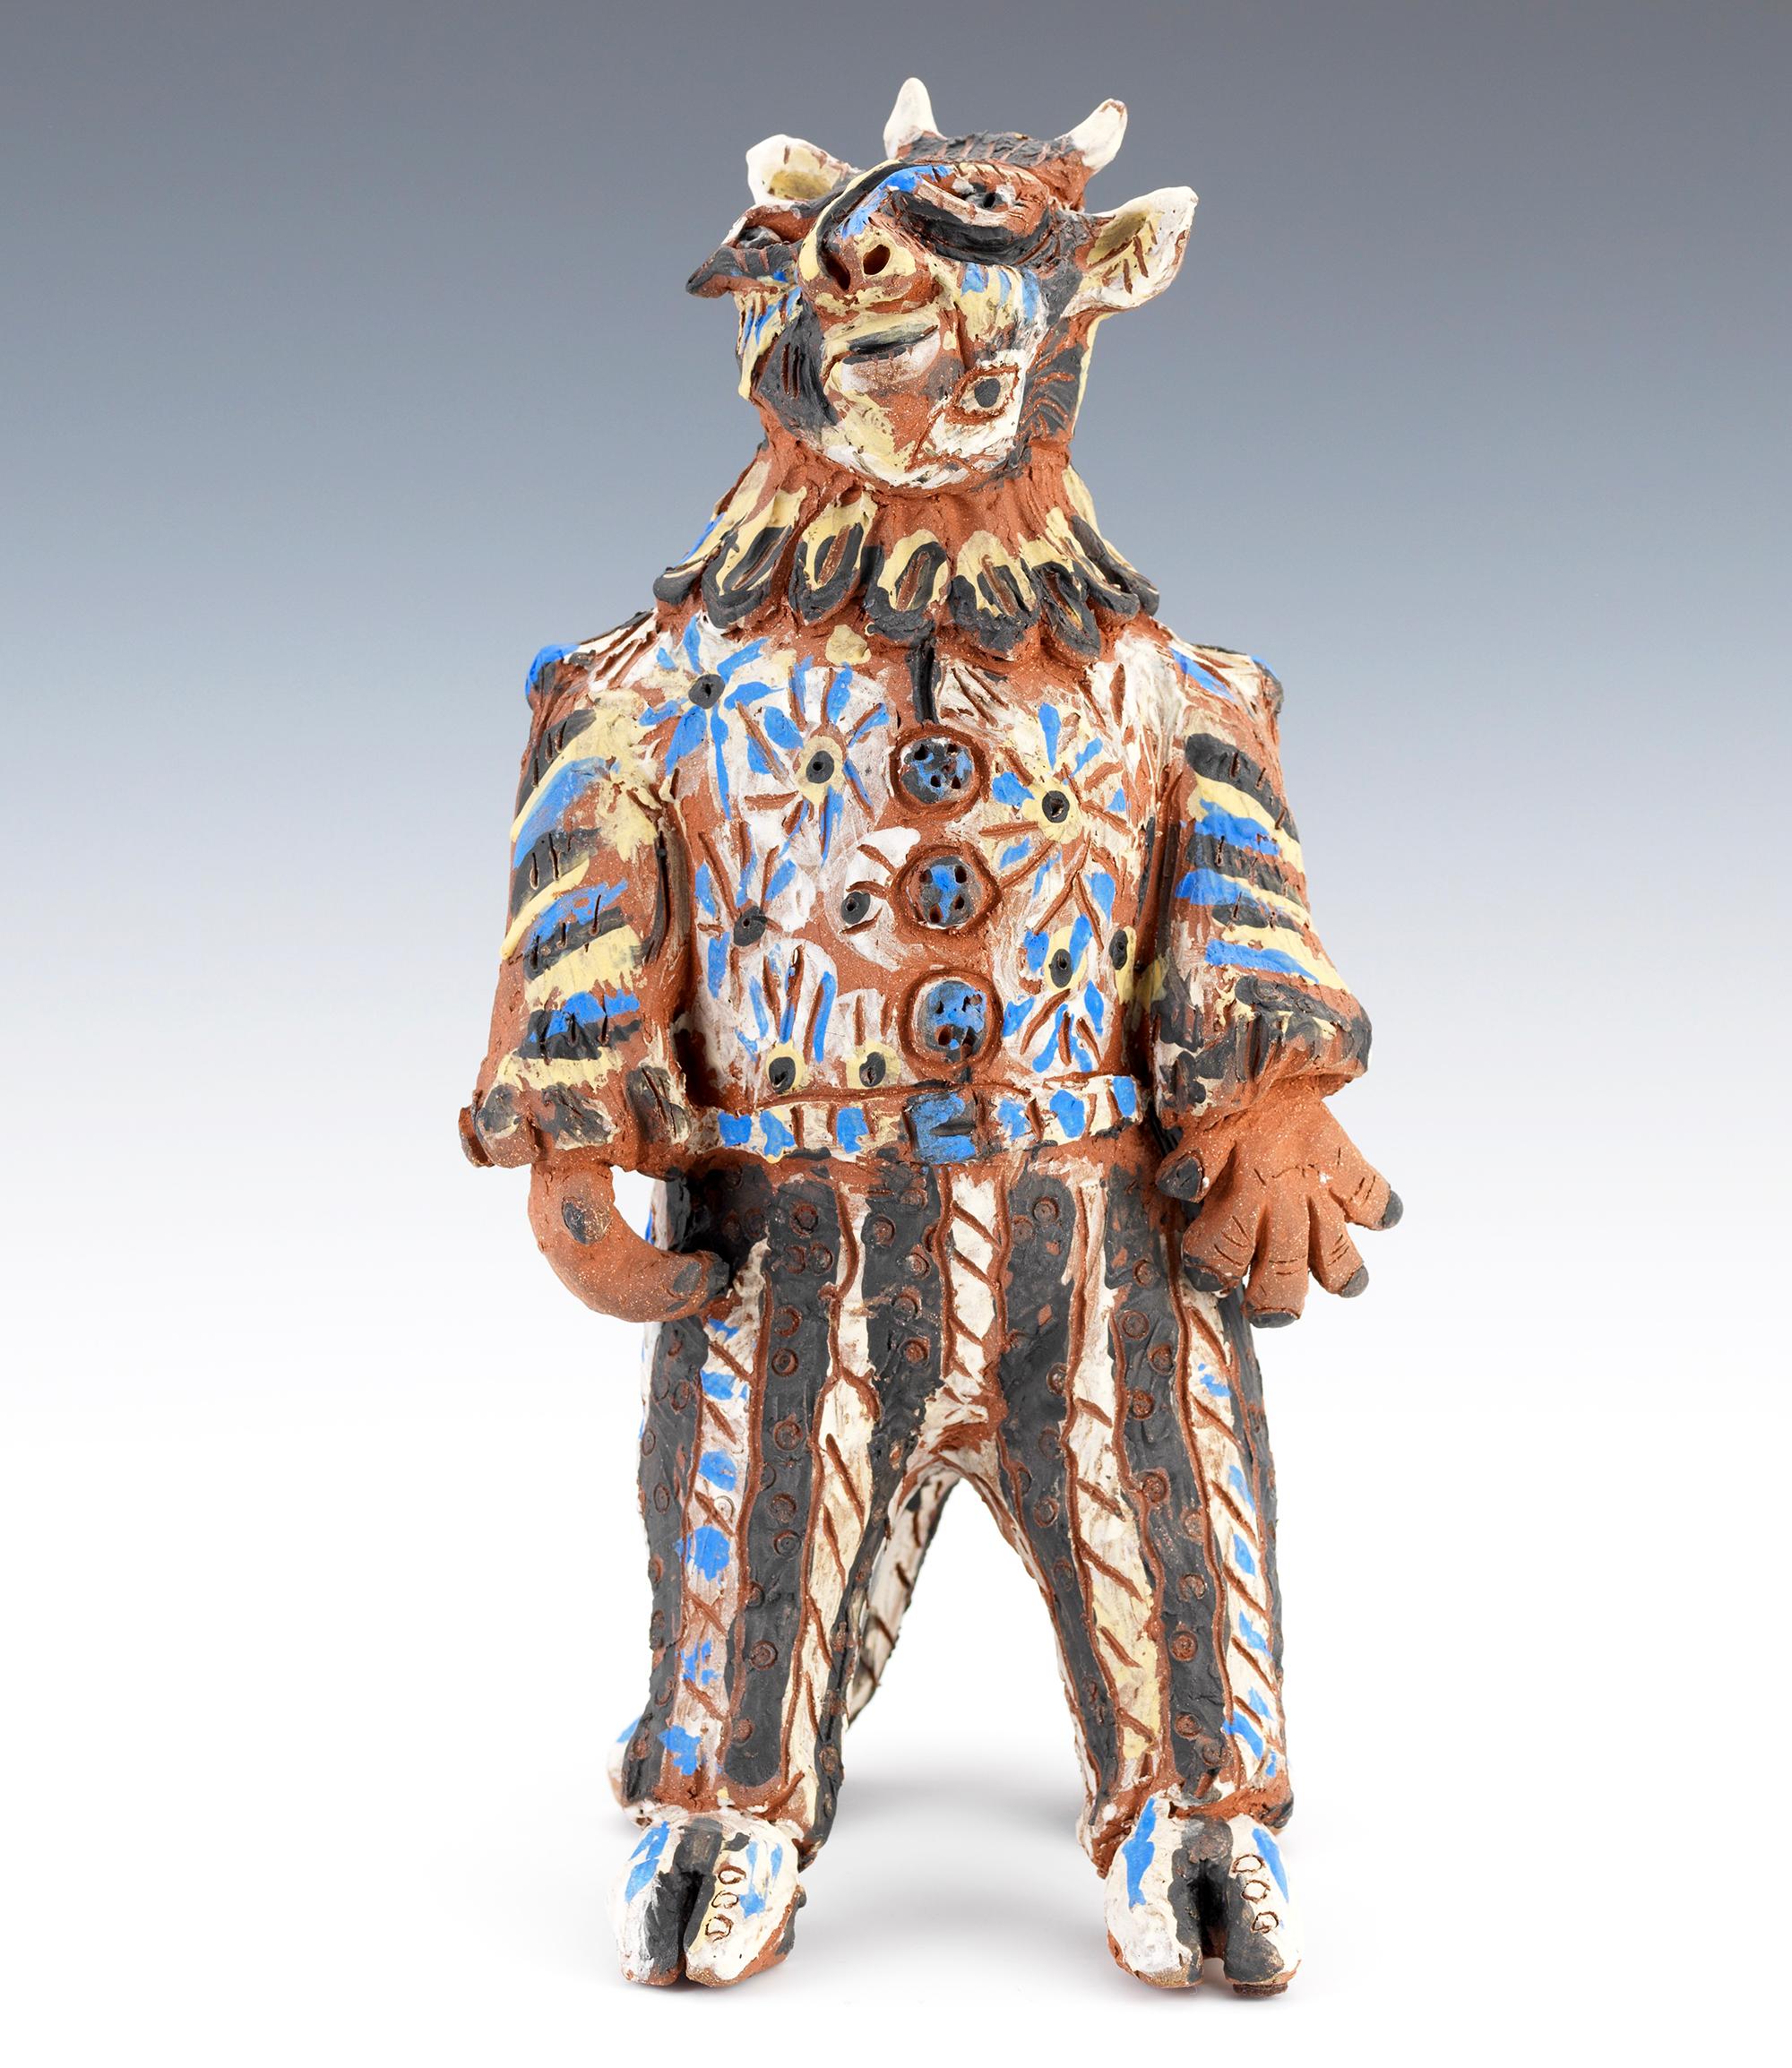 Sculpture contemporaine de type Minotaure Picasso créée par Carol Gentithes de Seagrove, en Caroline du Nord. La sculpture mi-homme, mi-taureau a deux visages et une queue en forme de tête de serpent... La sculpture mesure 14